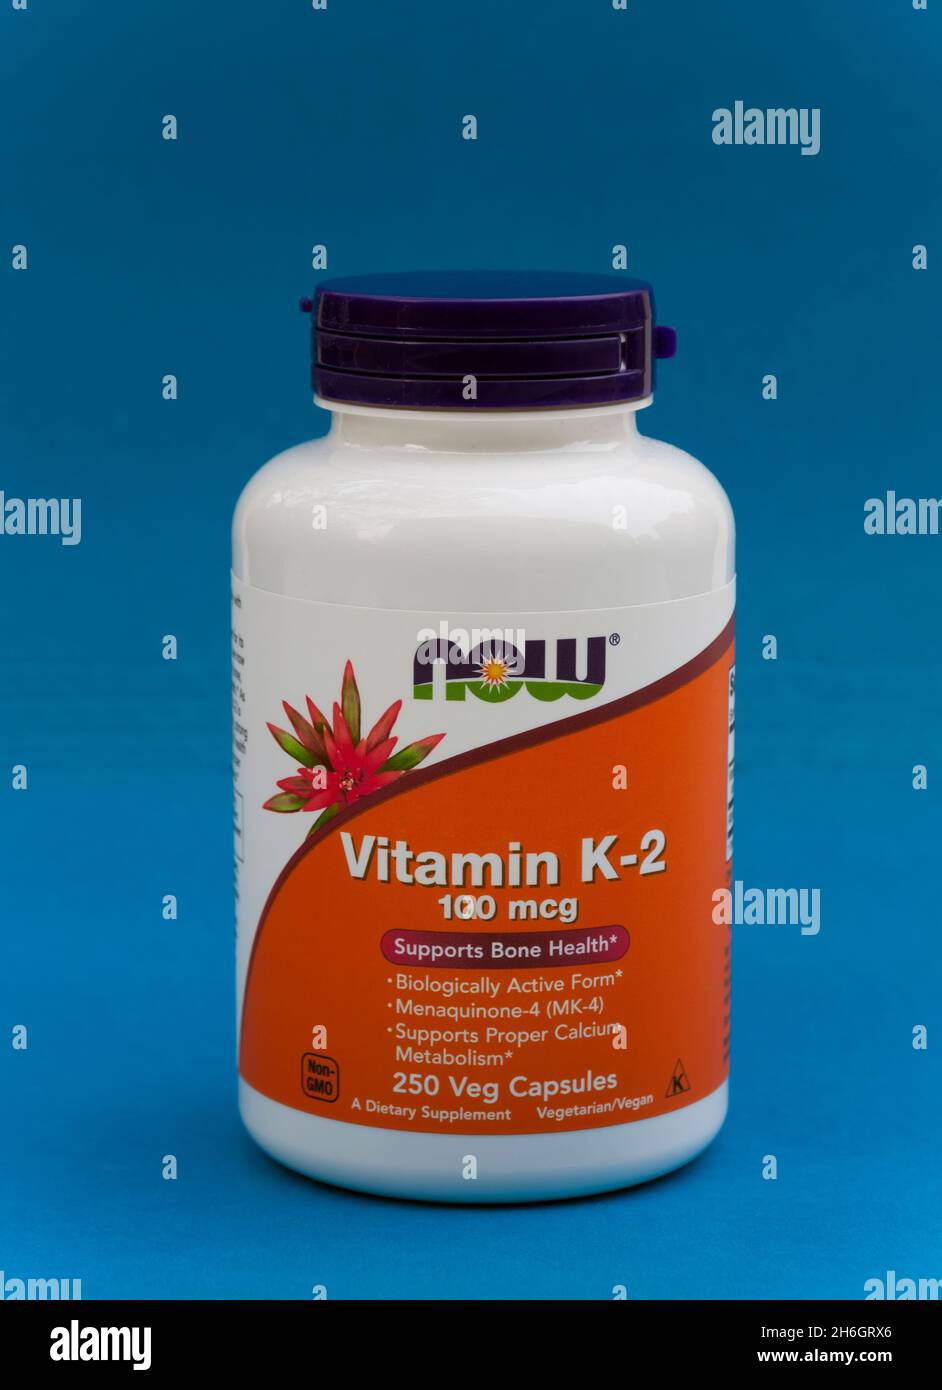 Vitamin K-2 bottle capsules (menaquinone-4, MK-4) that support bone health, cardio vascular and calcium metabolism. Stock Photo